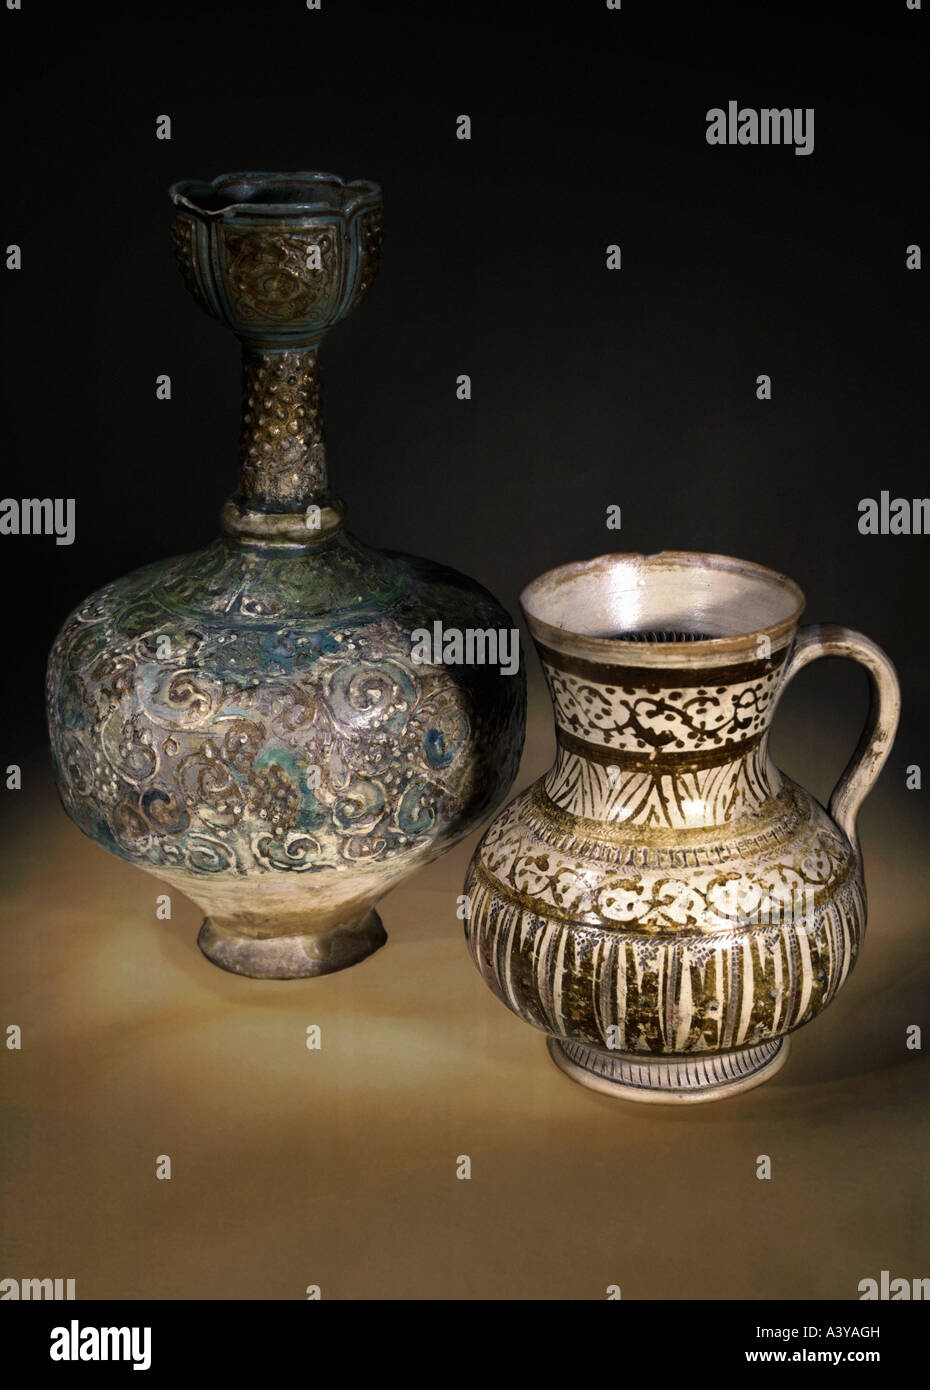 Belle arti, arte Islamica, craft / Artigianato, sinistra: bottiglia, mina i' tecnica, Iran, del XIII secolo, destra: mug, Valencia, Spagna, XVI Foto Stock